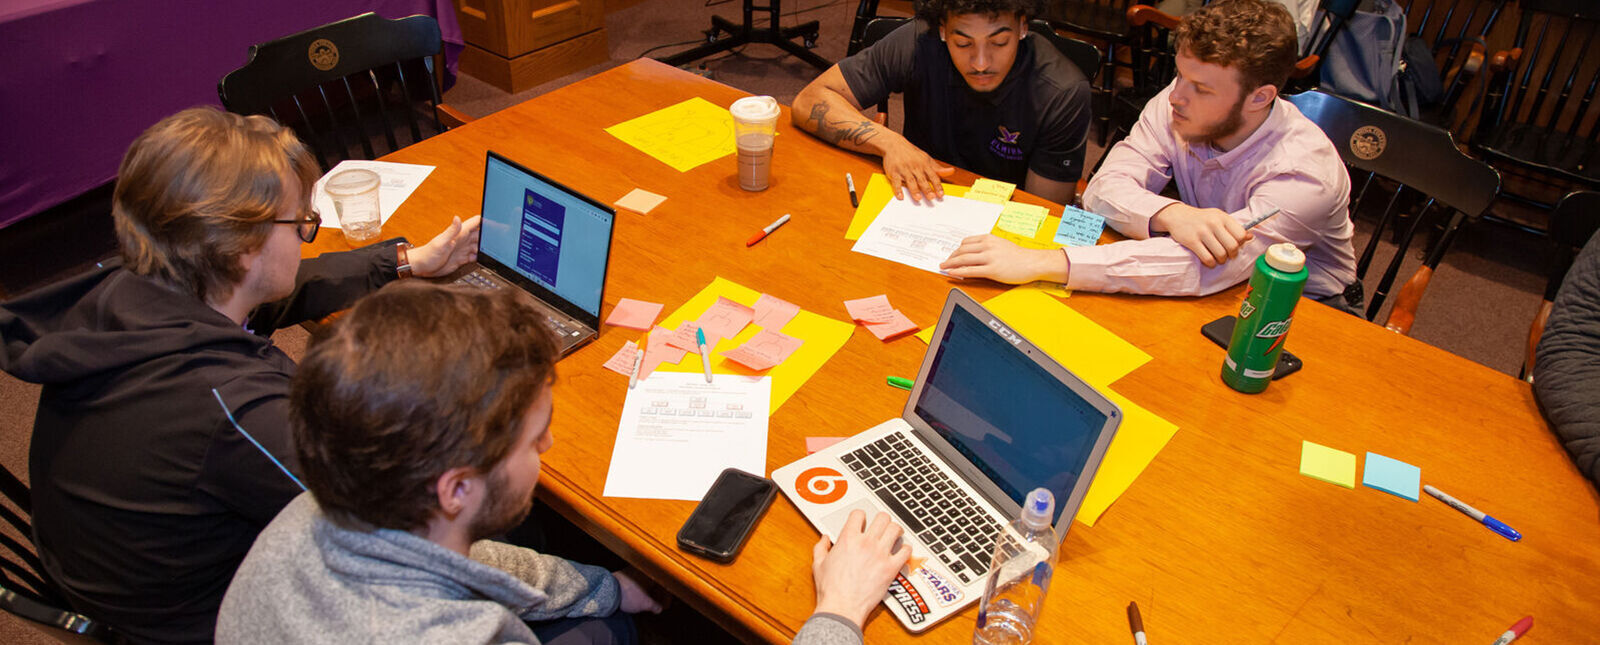 学生们一起在笔记本电脑上学习，围着一张木桌学习